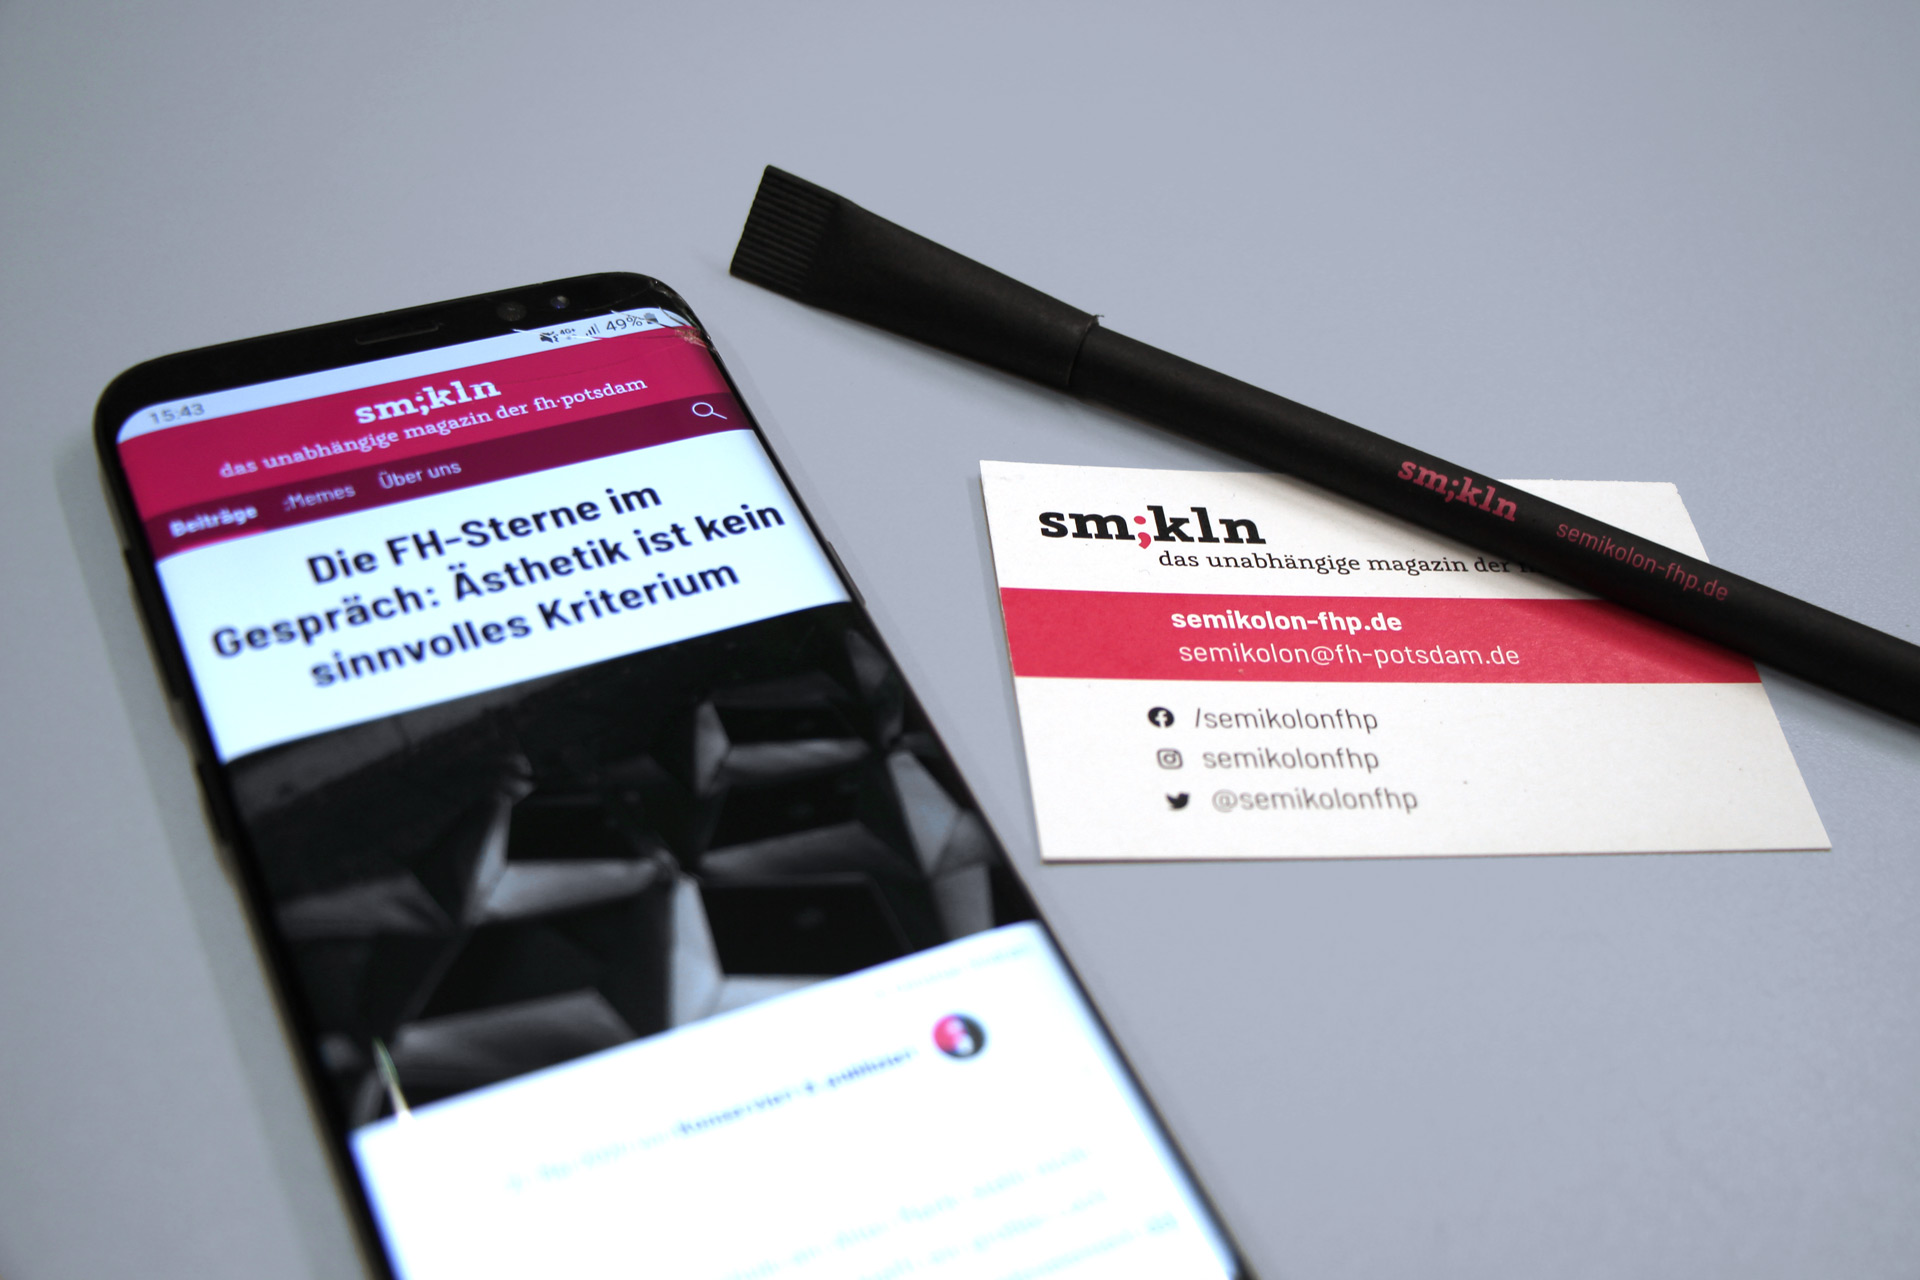 Eine Visitenkarte und ein Kugelschreiber im Design von Semikolon, daneben zeigt ein Smartphone die Semikolon-Webseite